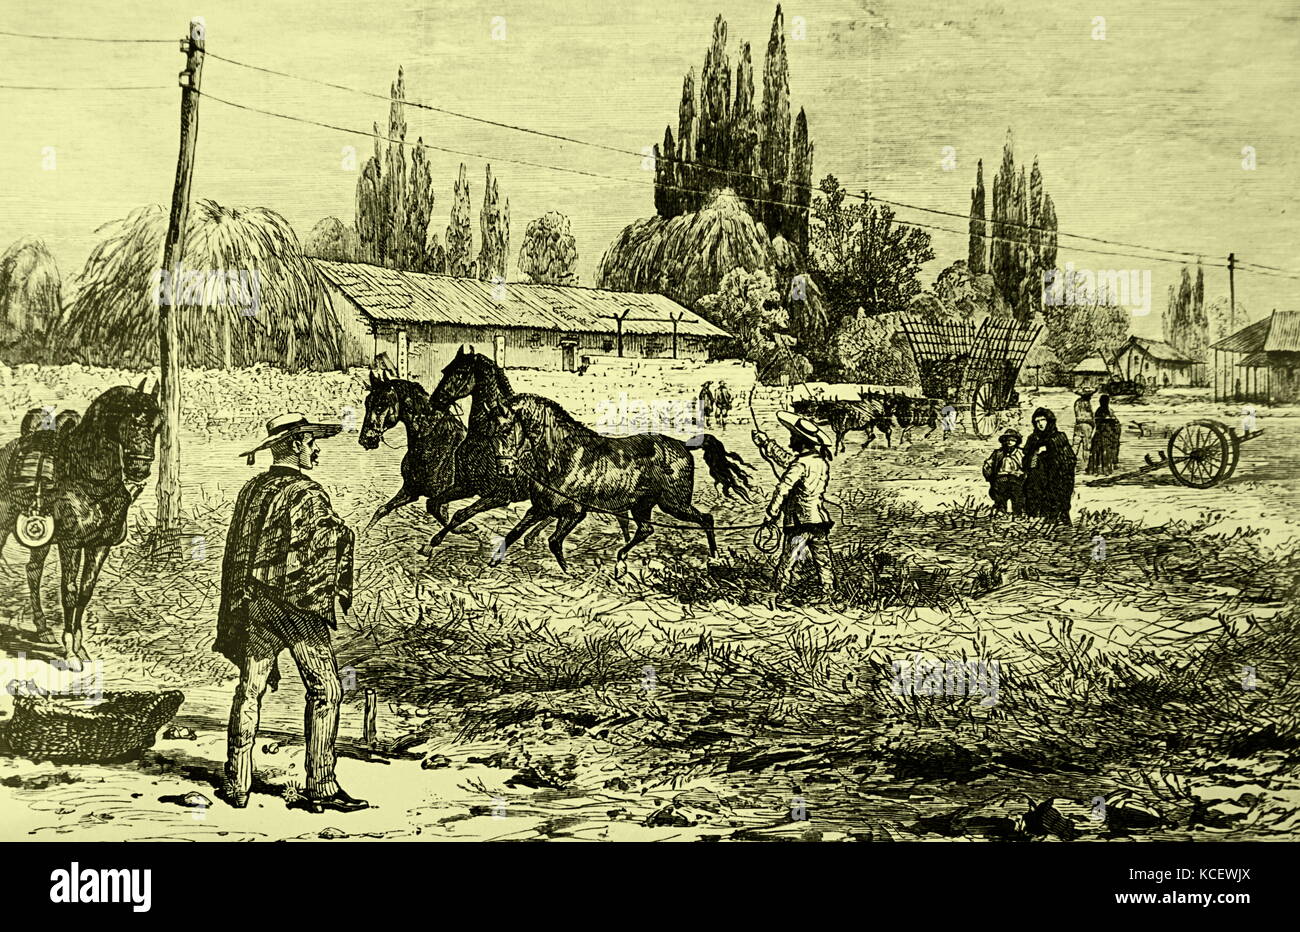 Gravur schildert Dreschen mit Pferden in Spanien. Dreschen ist eine Methode zur Trennung von Korn (Mais oder anderen Kulturen) verwendet, in der Regel mit einem dreschflegel oder durch die Aktion eines revolvierenden Mechanismus. Vom 19. Jahrhundert Stockfoto